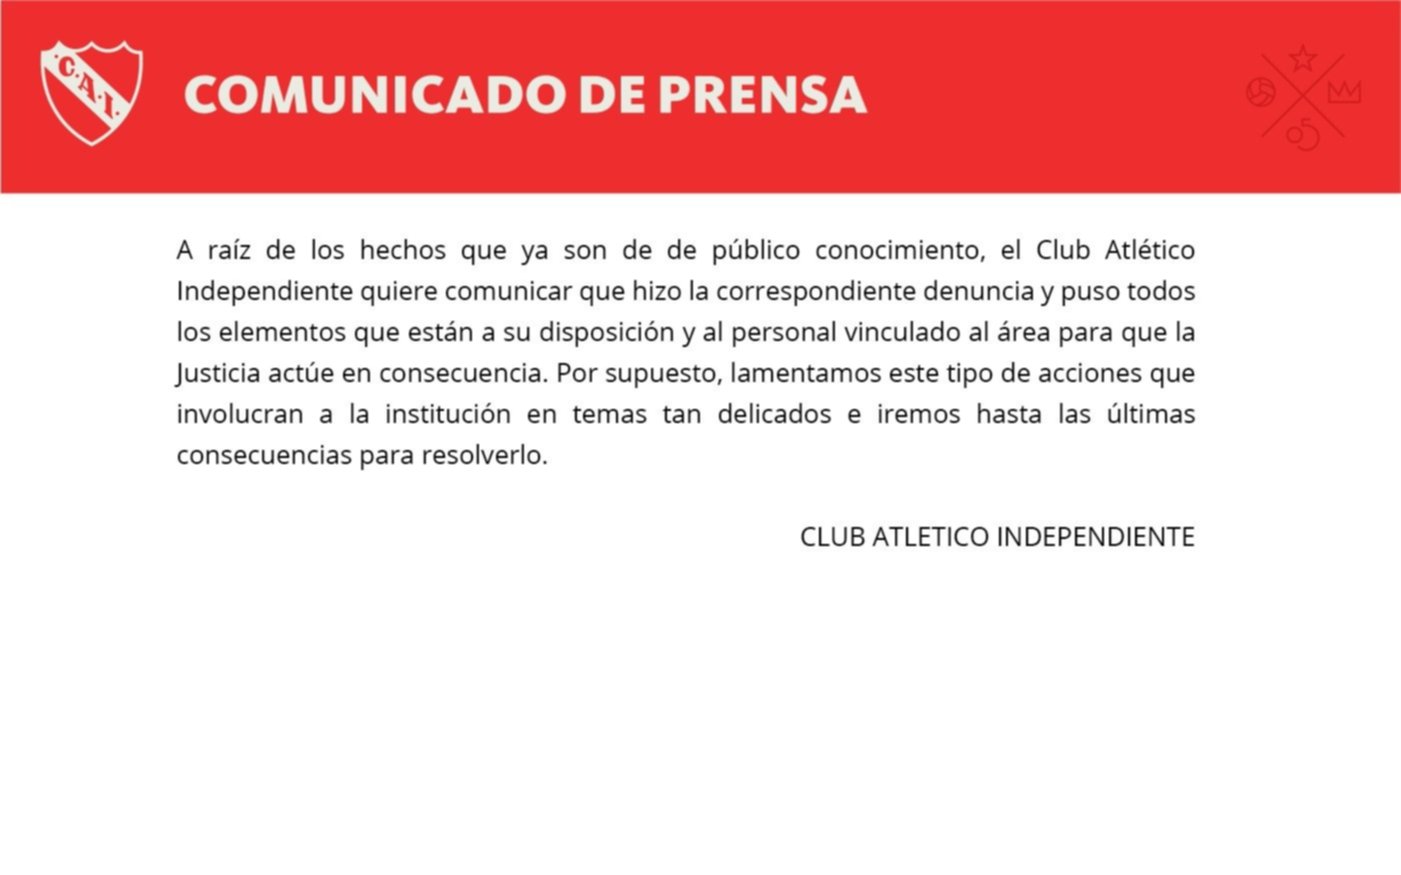 El comunicado de Independiente tras la grave denuncia